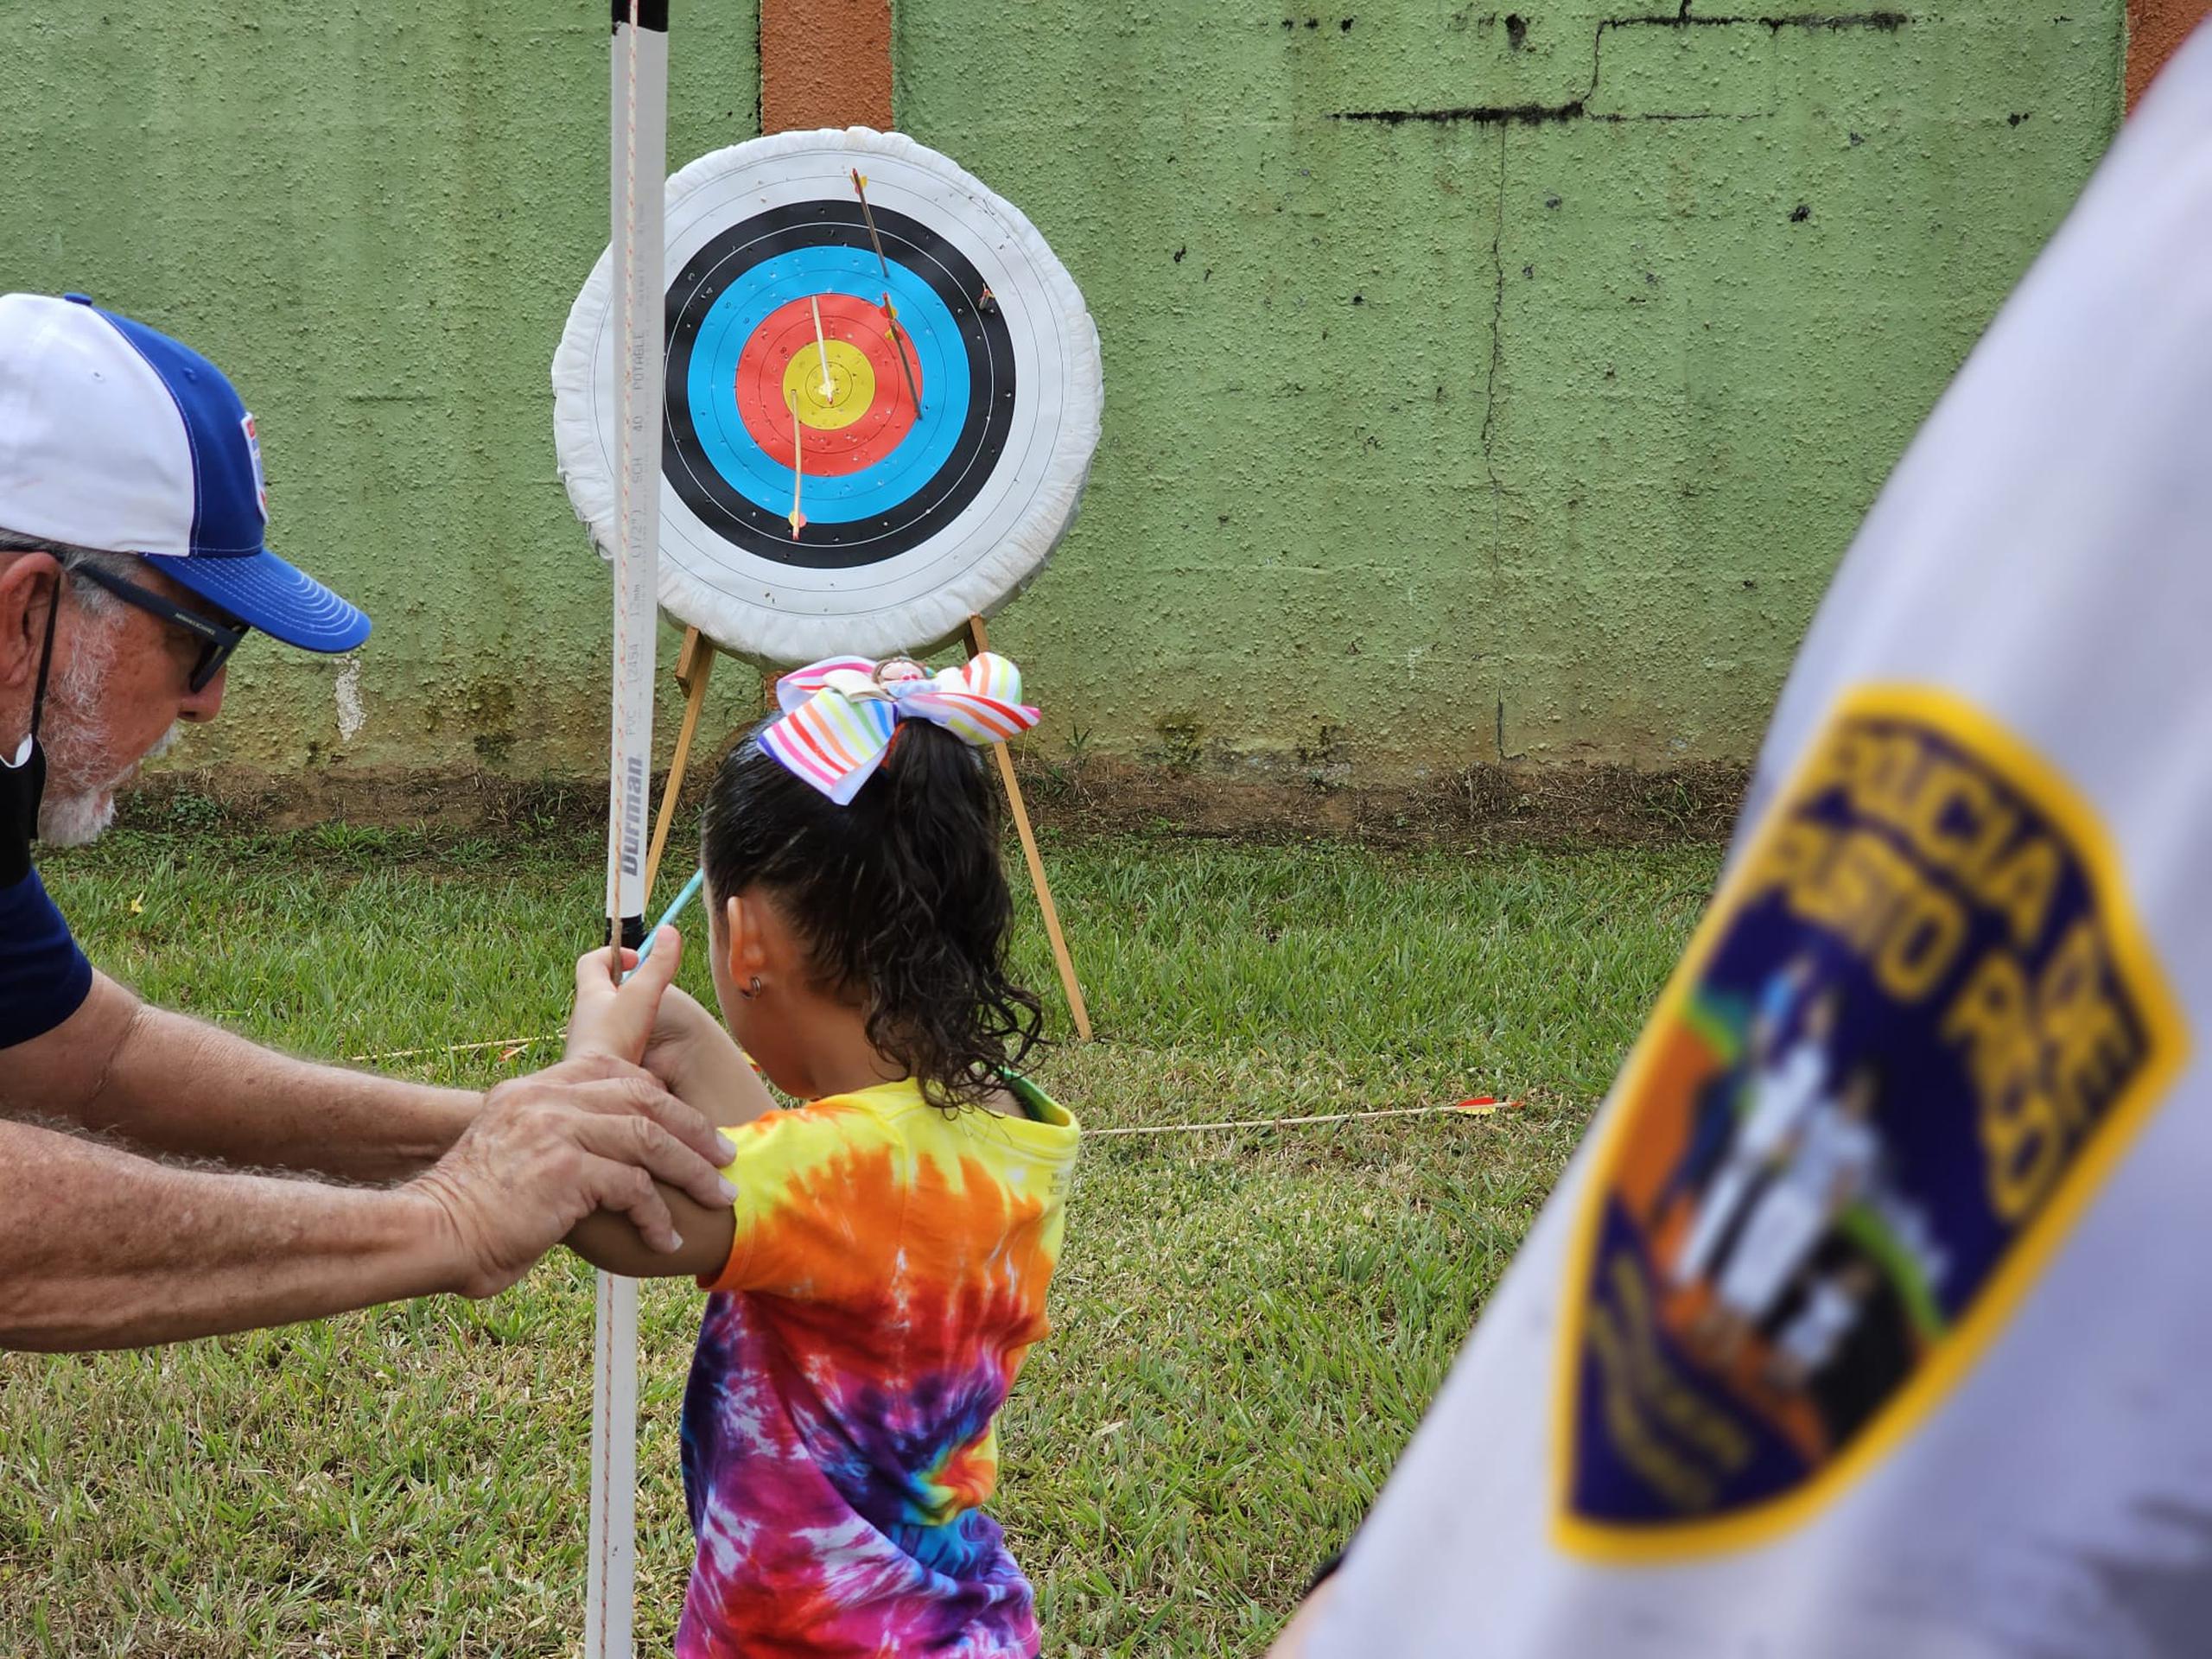 Una niña aprende el deporte de arco y flecha, mientras un agente de la Policía observa como parte del impacto comunitario que realizan en el residencial Pedro Zorrilla de Manatí.